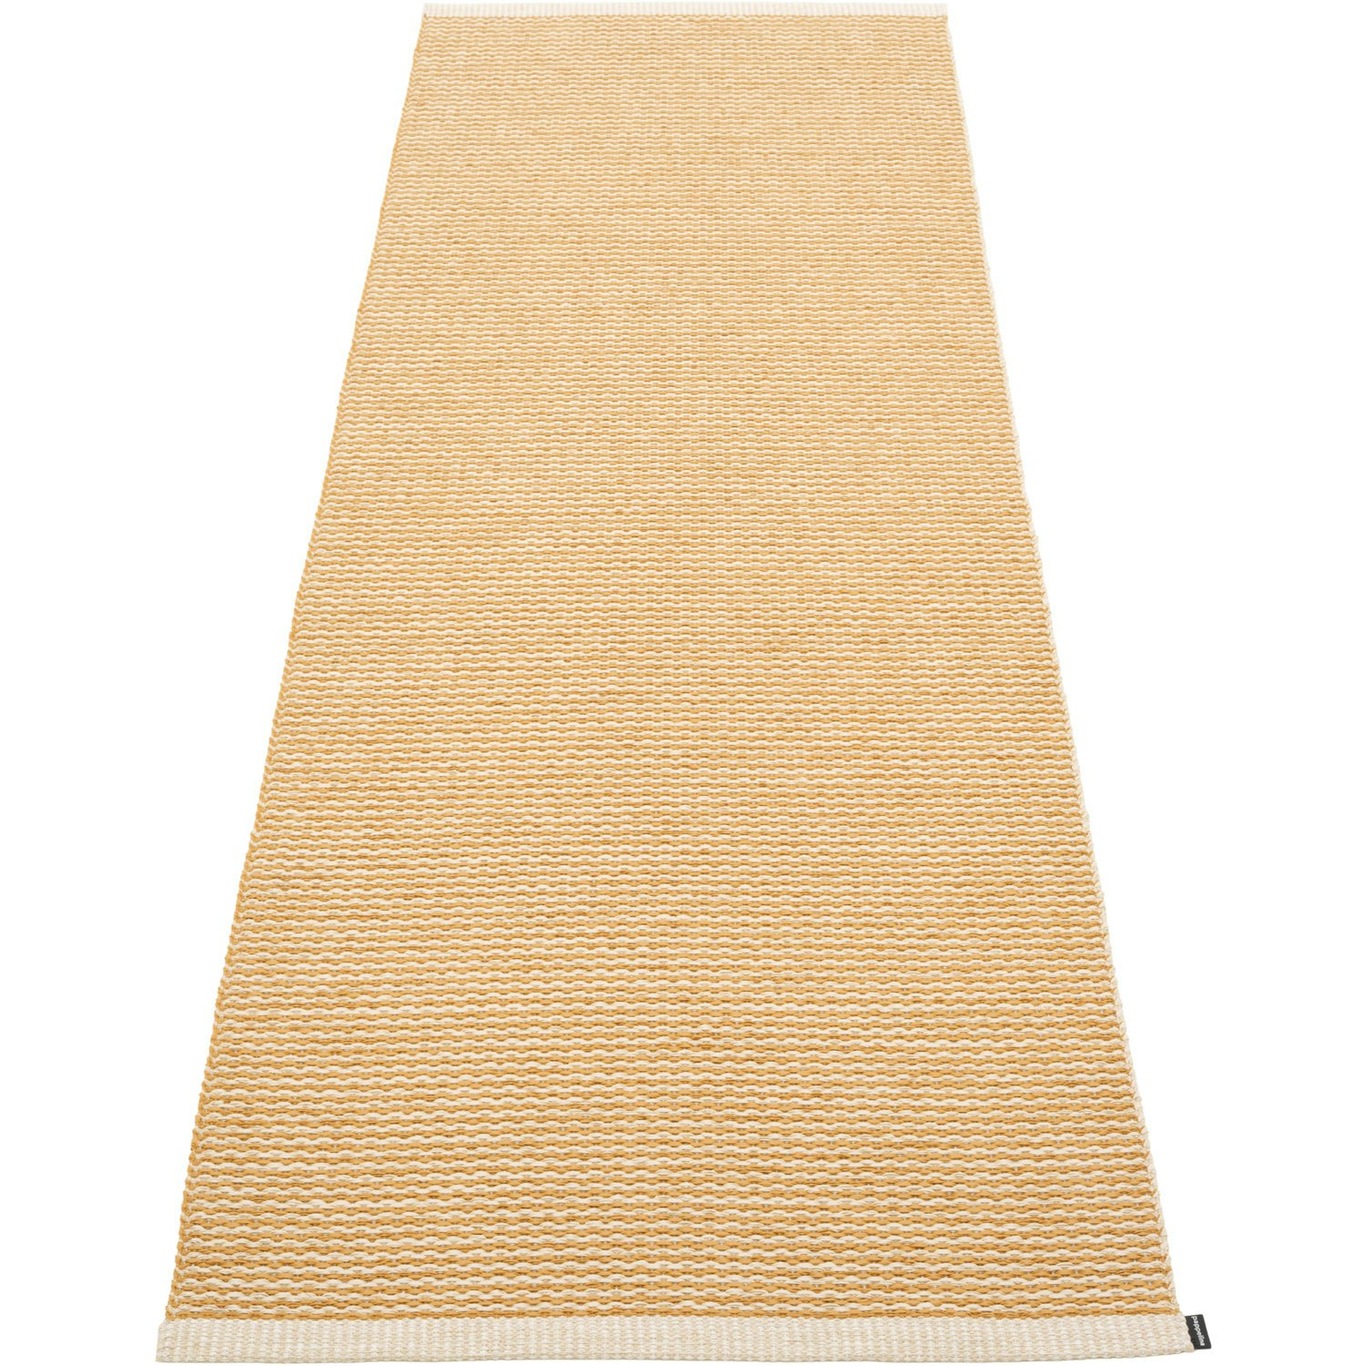 Mono Teppich Ocker/Cremefarben, 85x260 cm